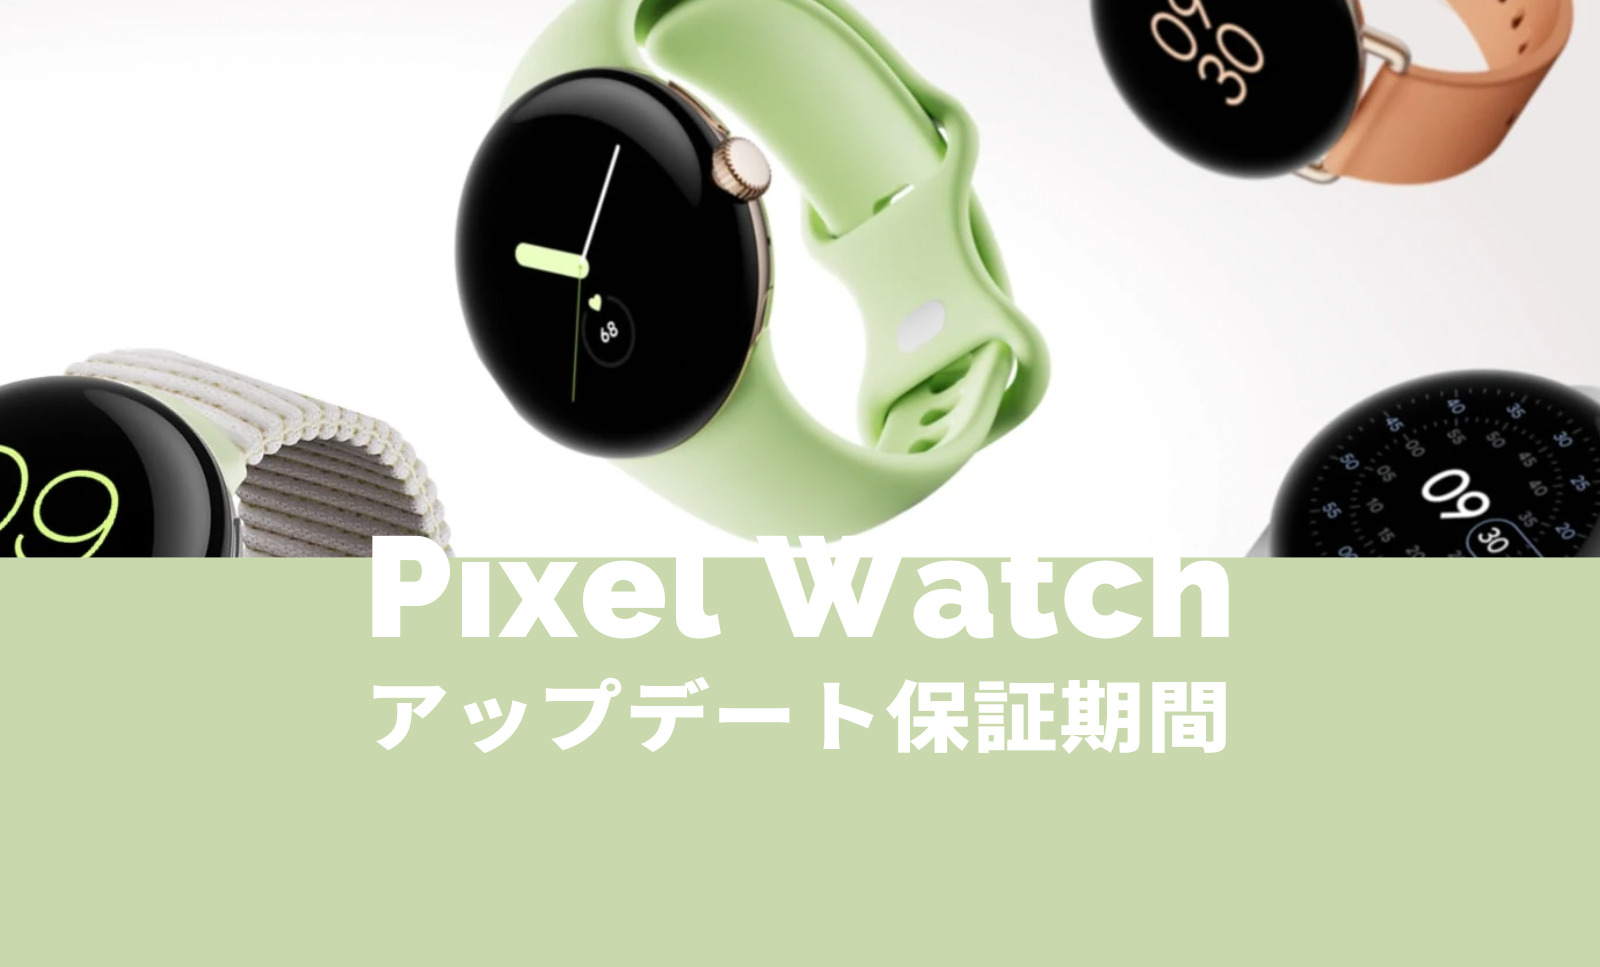 Pixel Watch(ピクセルウォッチ)のアップデート保証期間は3年間？【Google】のサムネイル画像